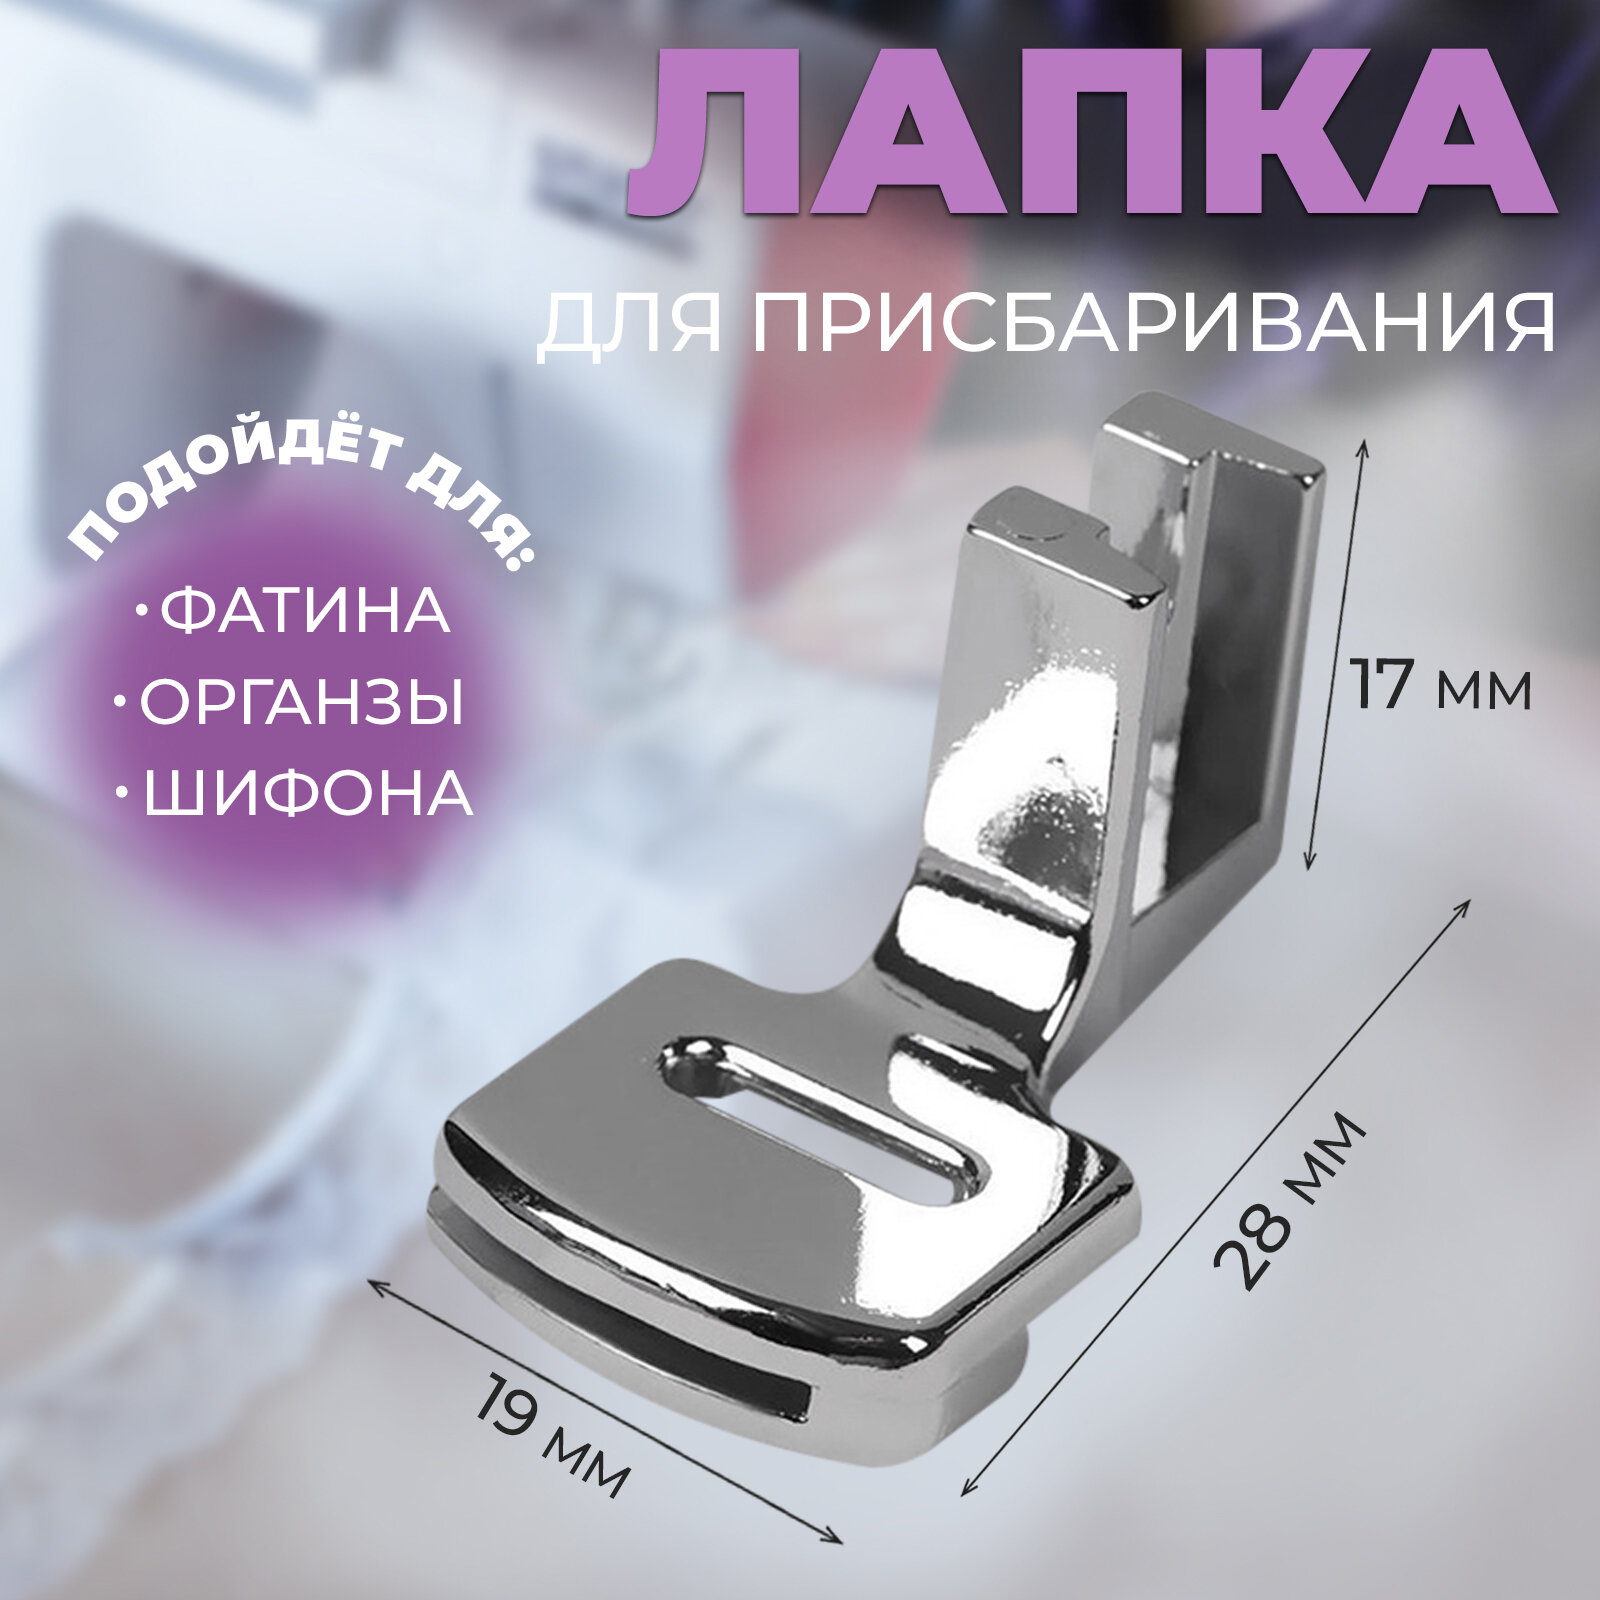 Лапка для швейных машин, для присбаривания, с адаптером, 2,8 × 1,7 × 1,9 см (2шт.)